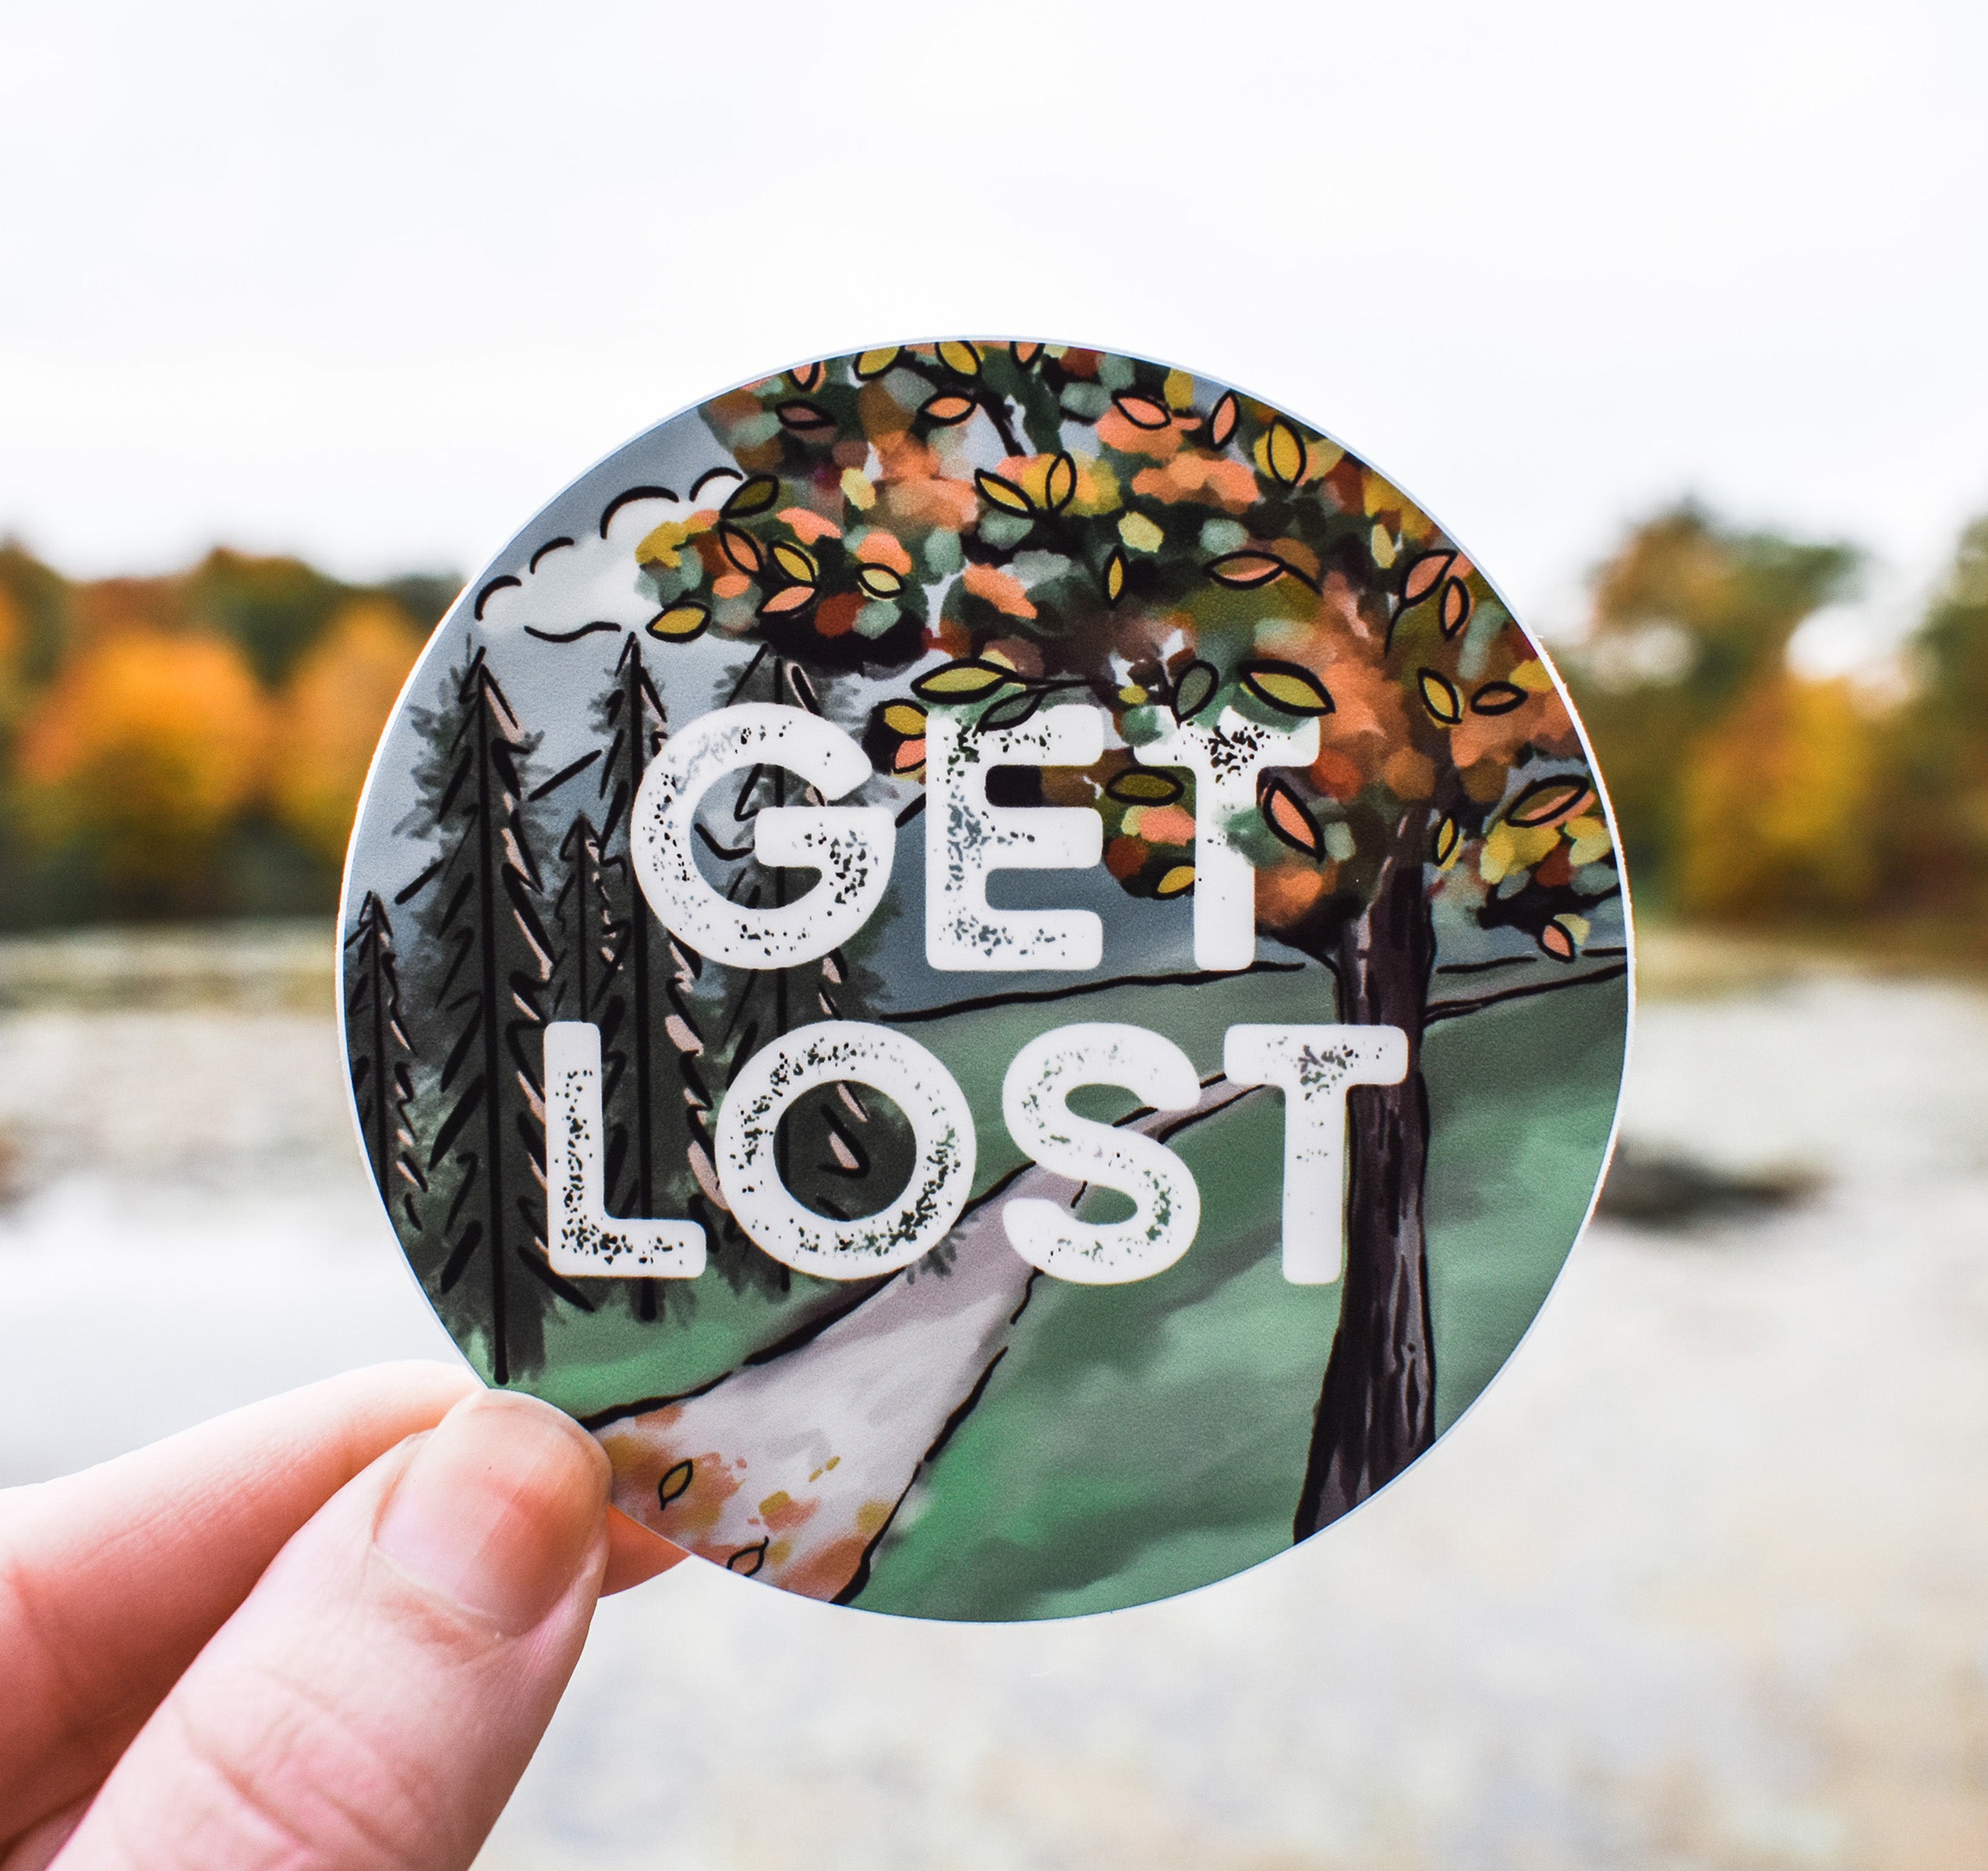 Get lost hiking sticker